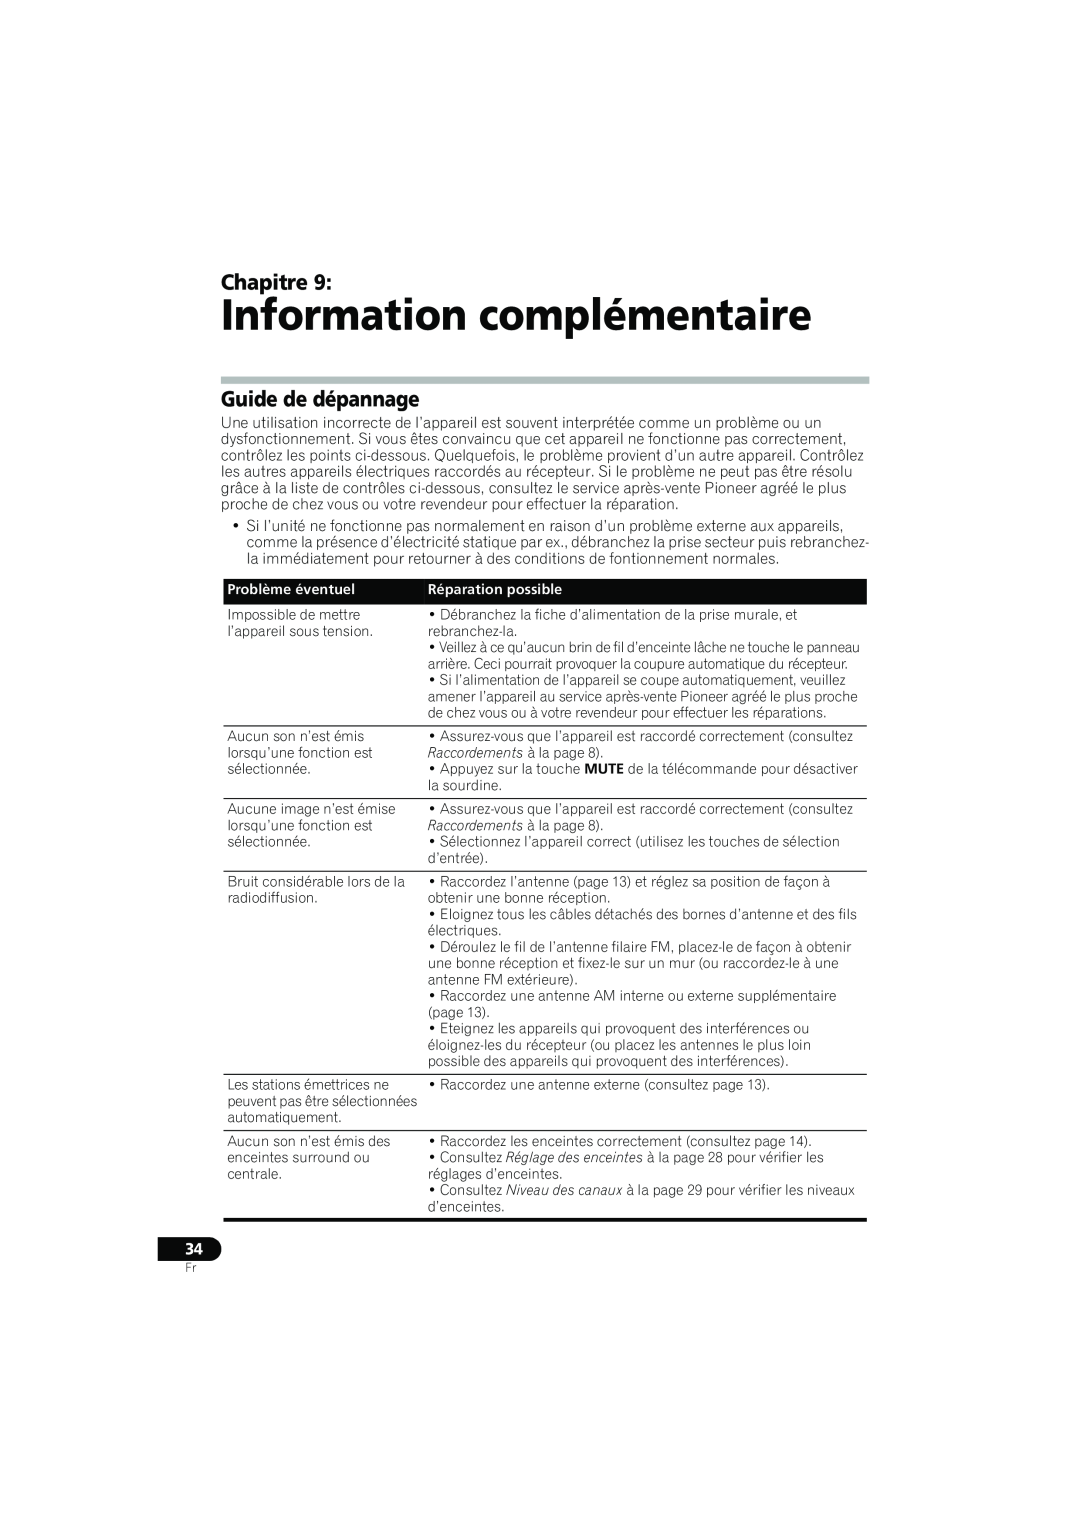 Pioneer XRE3138-A manual Information complémentaire, Guide de dépannage, Problème éventuel, Réparation possible, Chapitre 